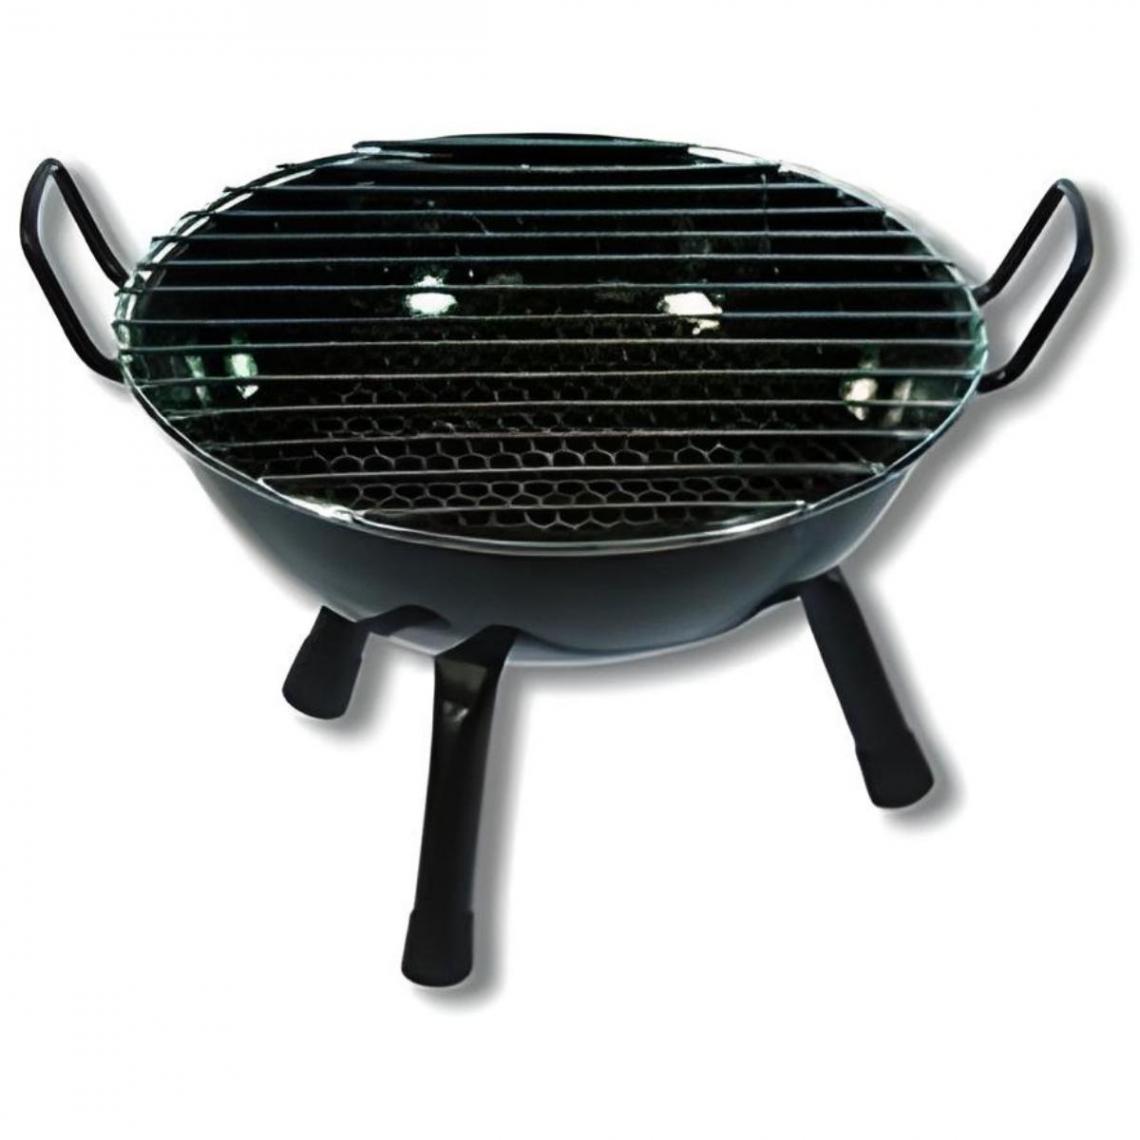 Visiodirect - Barbecue rond vitrifié pour table en Acier inoxydable coloris Noir - 28 x 20 cm - Barbecues charbon de bois